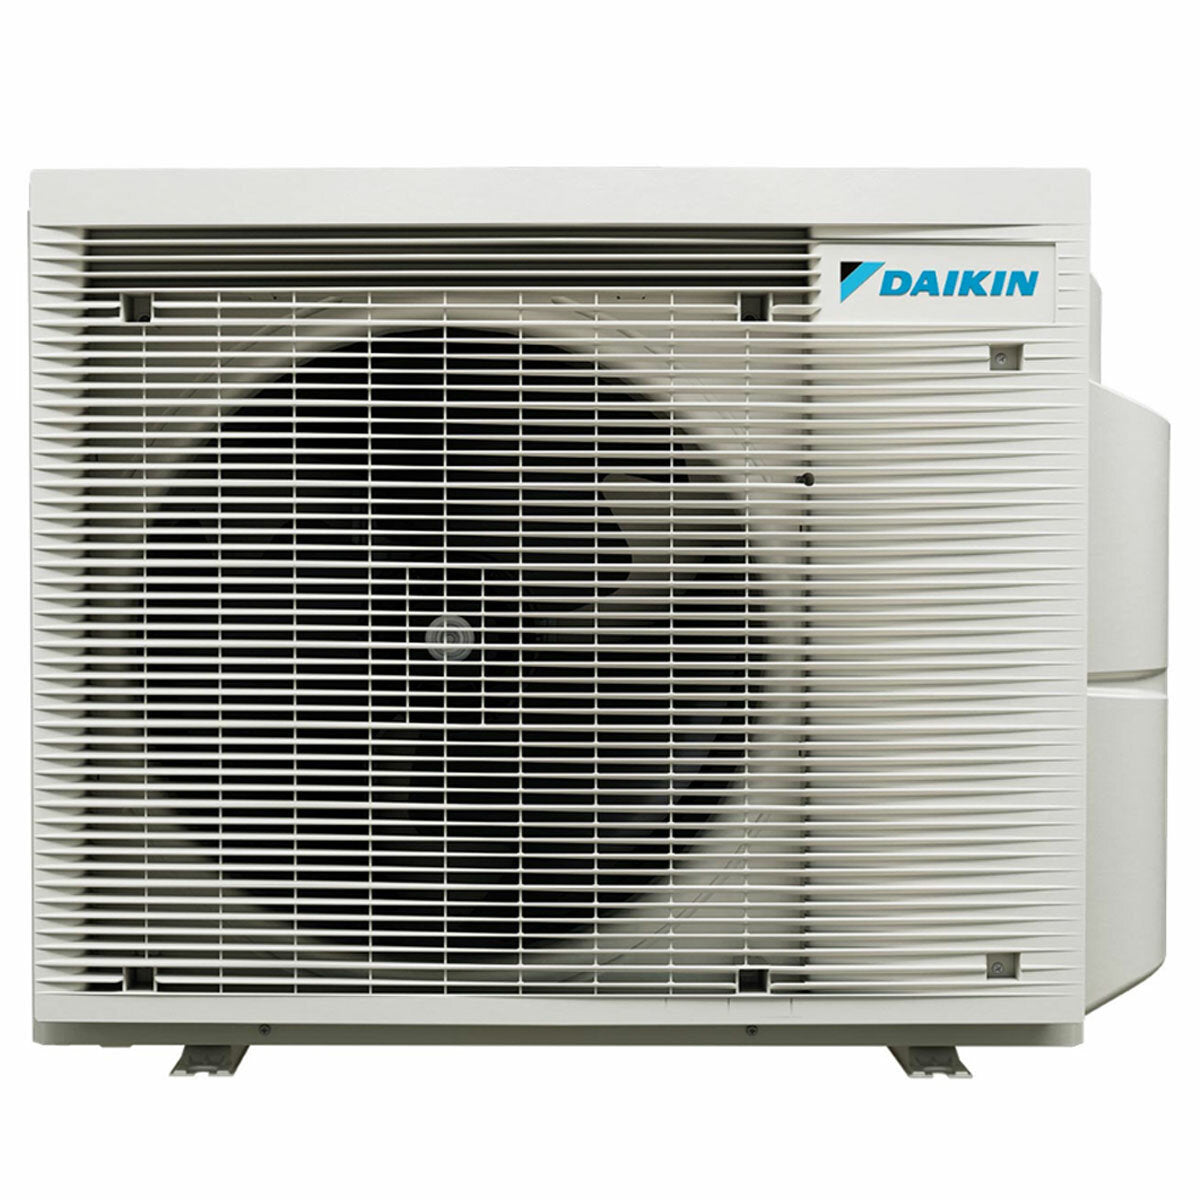 Daikin Emura 3 trial split air conditioner 7000+9000+12000 BTU inverter A++ wifi outdoor unit 5 kW Black